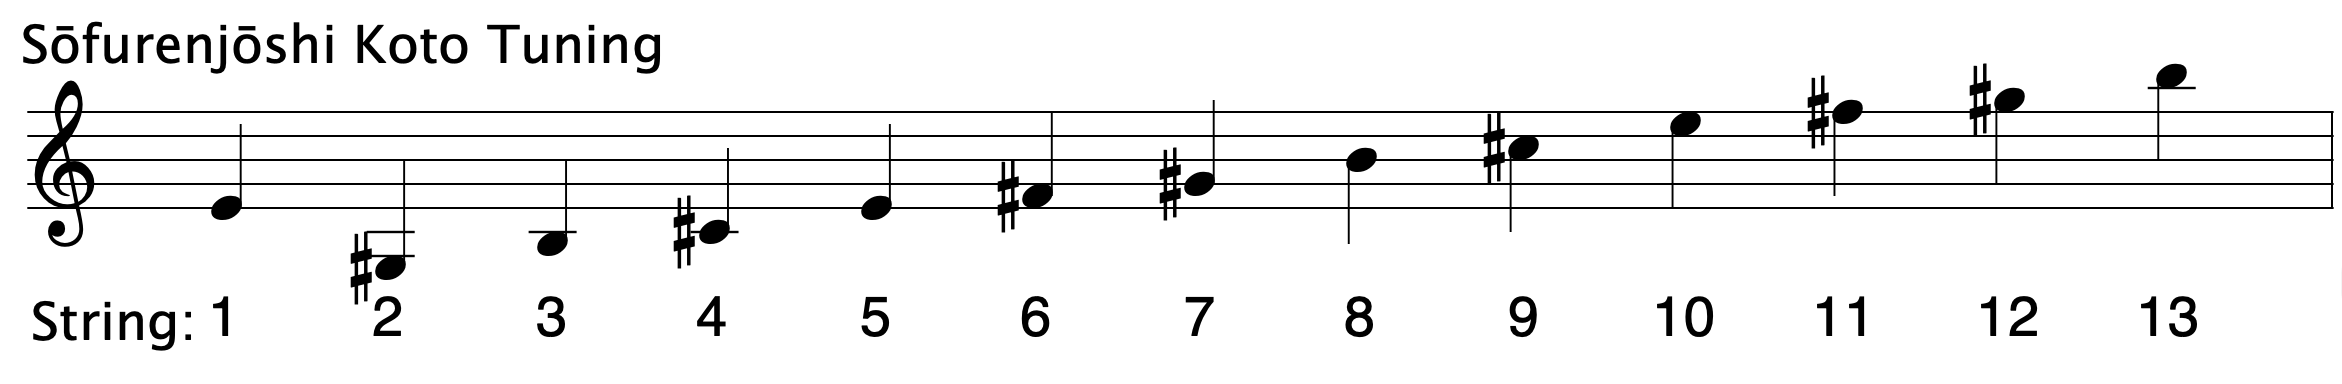  Sōfurenjōshi Koto Tuning ranging from G3# to B5 